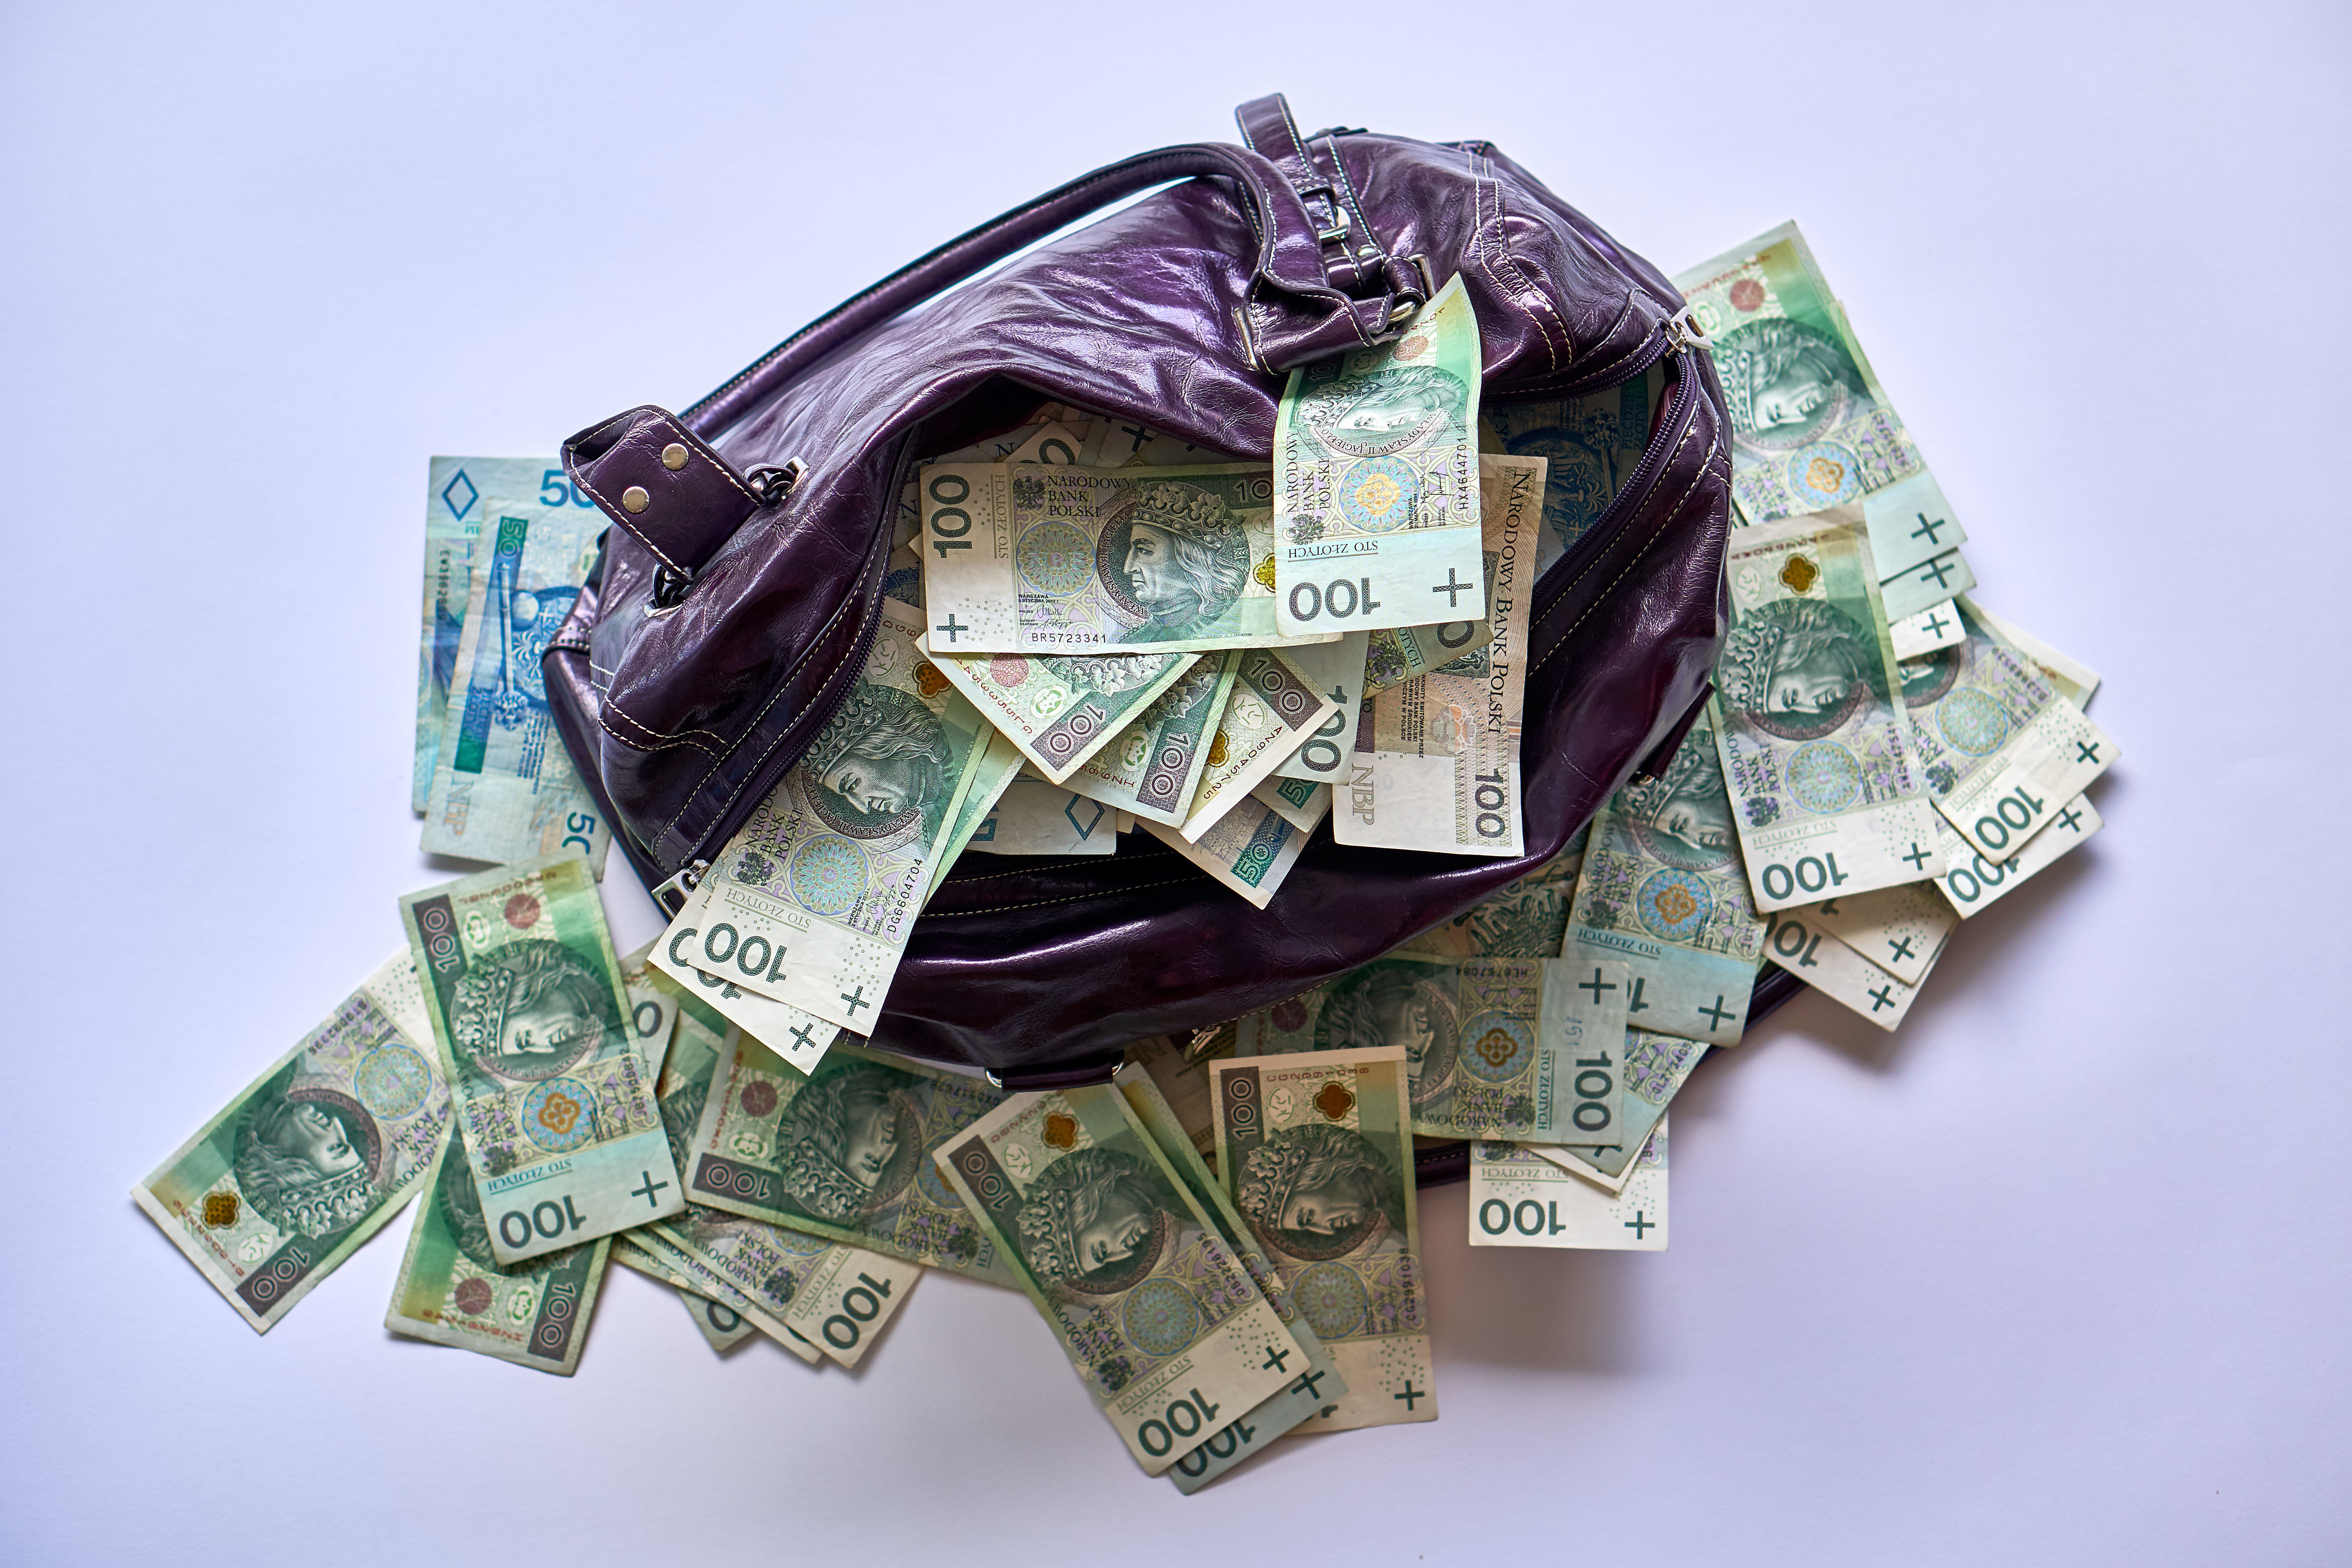 Policja w Sopocie szuka właściciela torby z pieniędzmi - Podróże